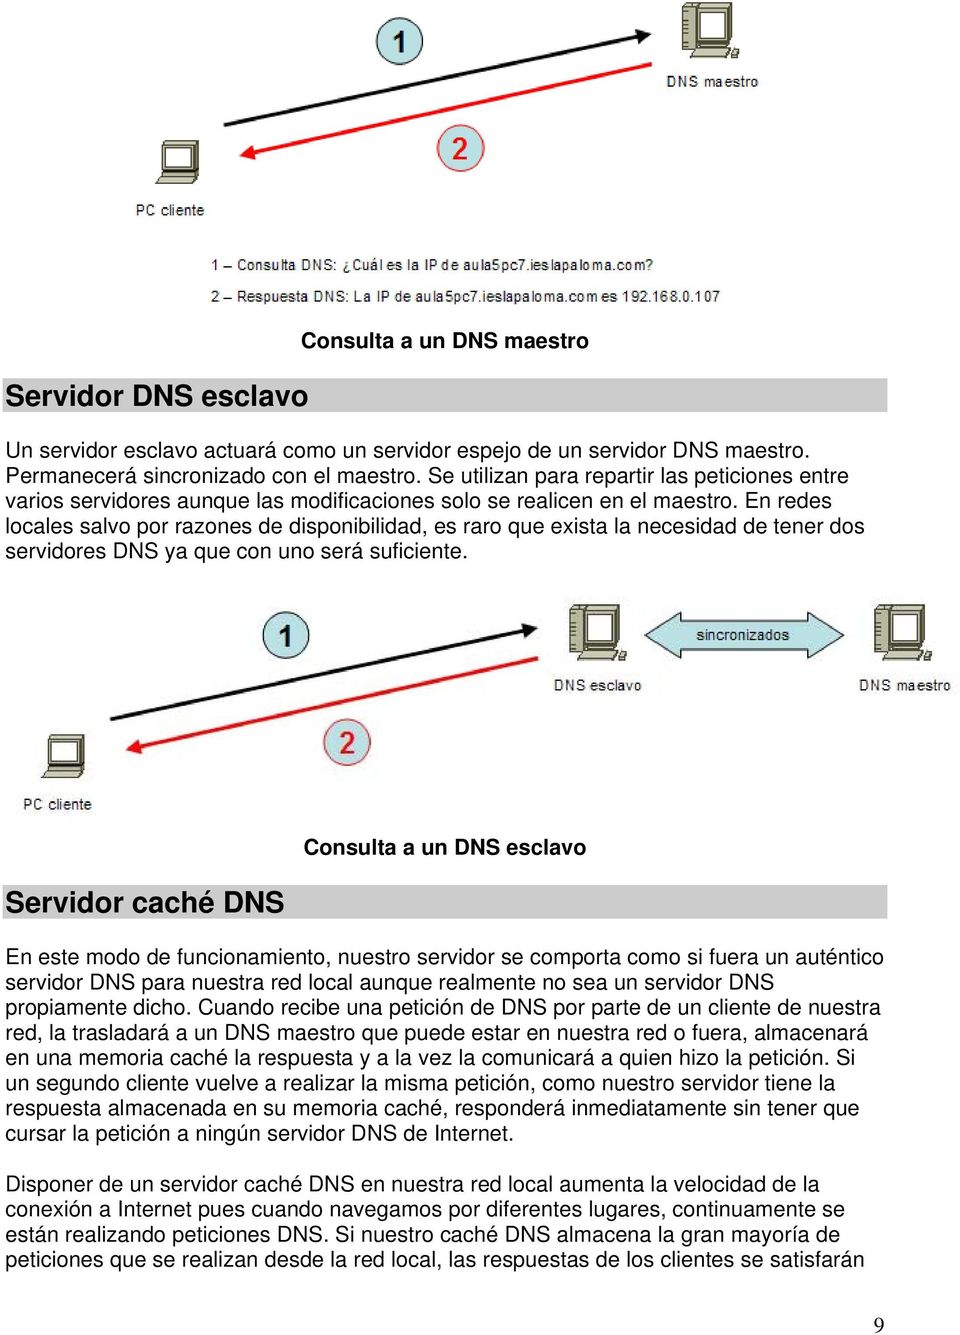 En redes locales salvo por razones de disponibilidad, es raro que exista la necesidad de tener dos servidores DNS ya que con uno será suficiente.